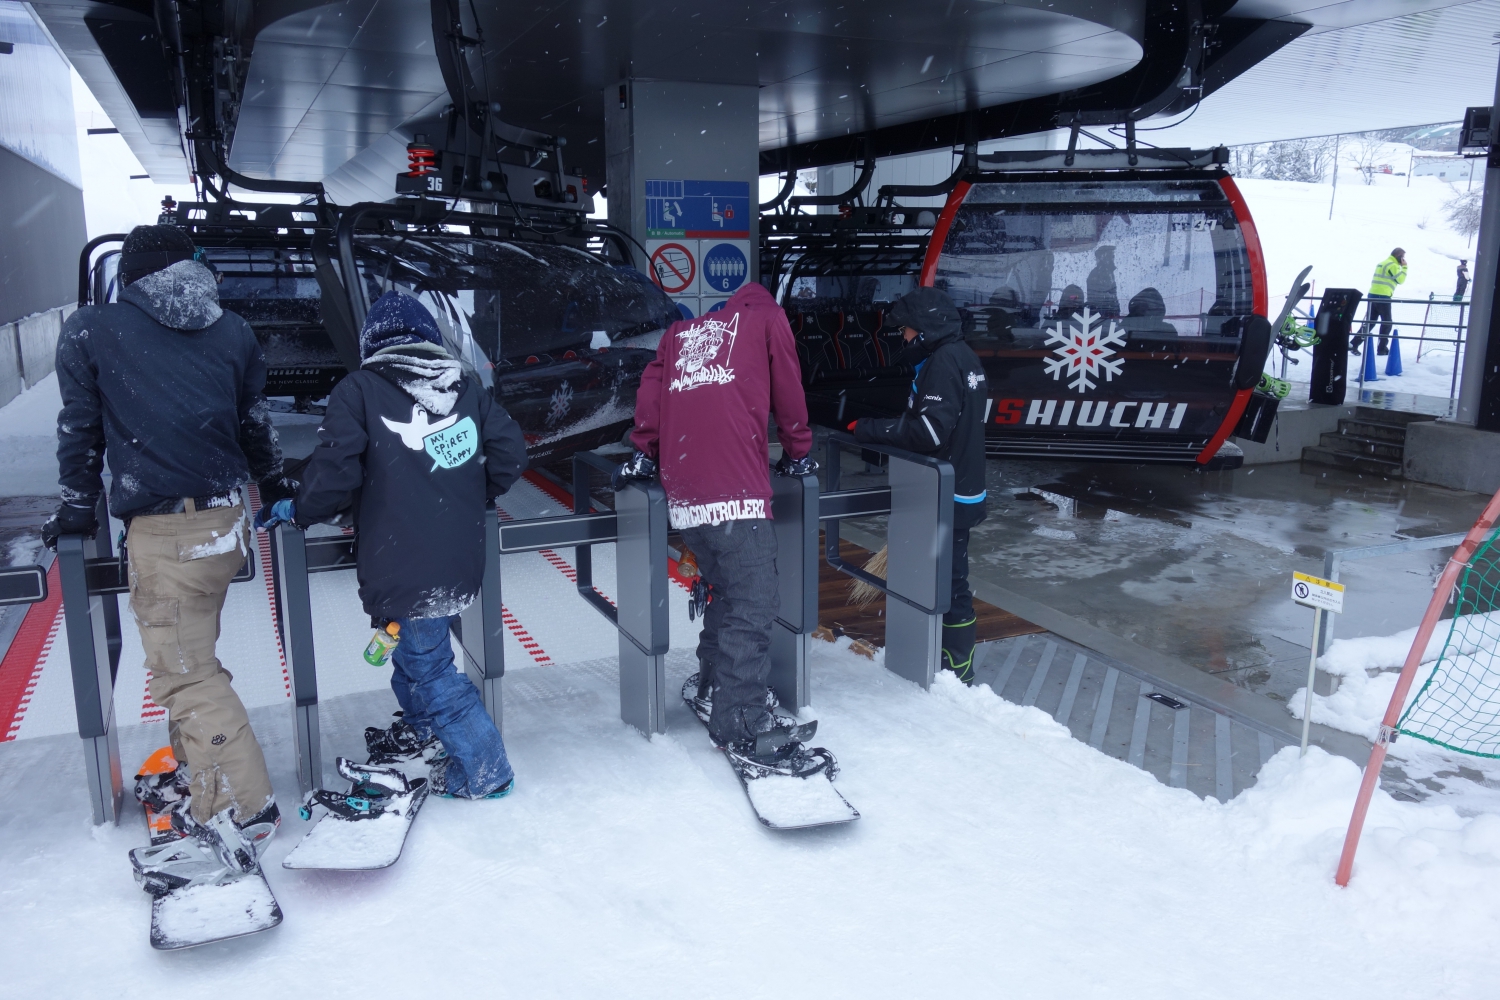 スキー 場 丸山 石打 スキー場はウィンタースポーツのためだけの場所じゃない。石打丸山スキー場の「雪山の新たな滞在体験モデル」は雪資源豊富な地方に交流人口を増やすきっかけになるか